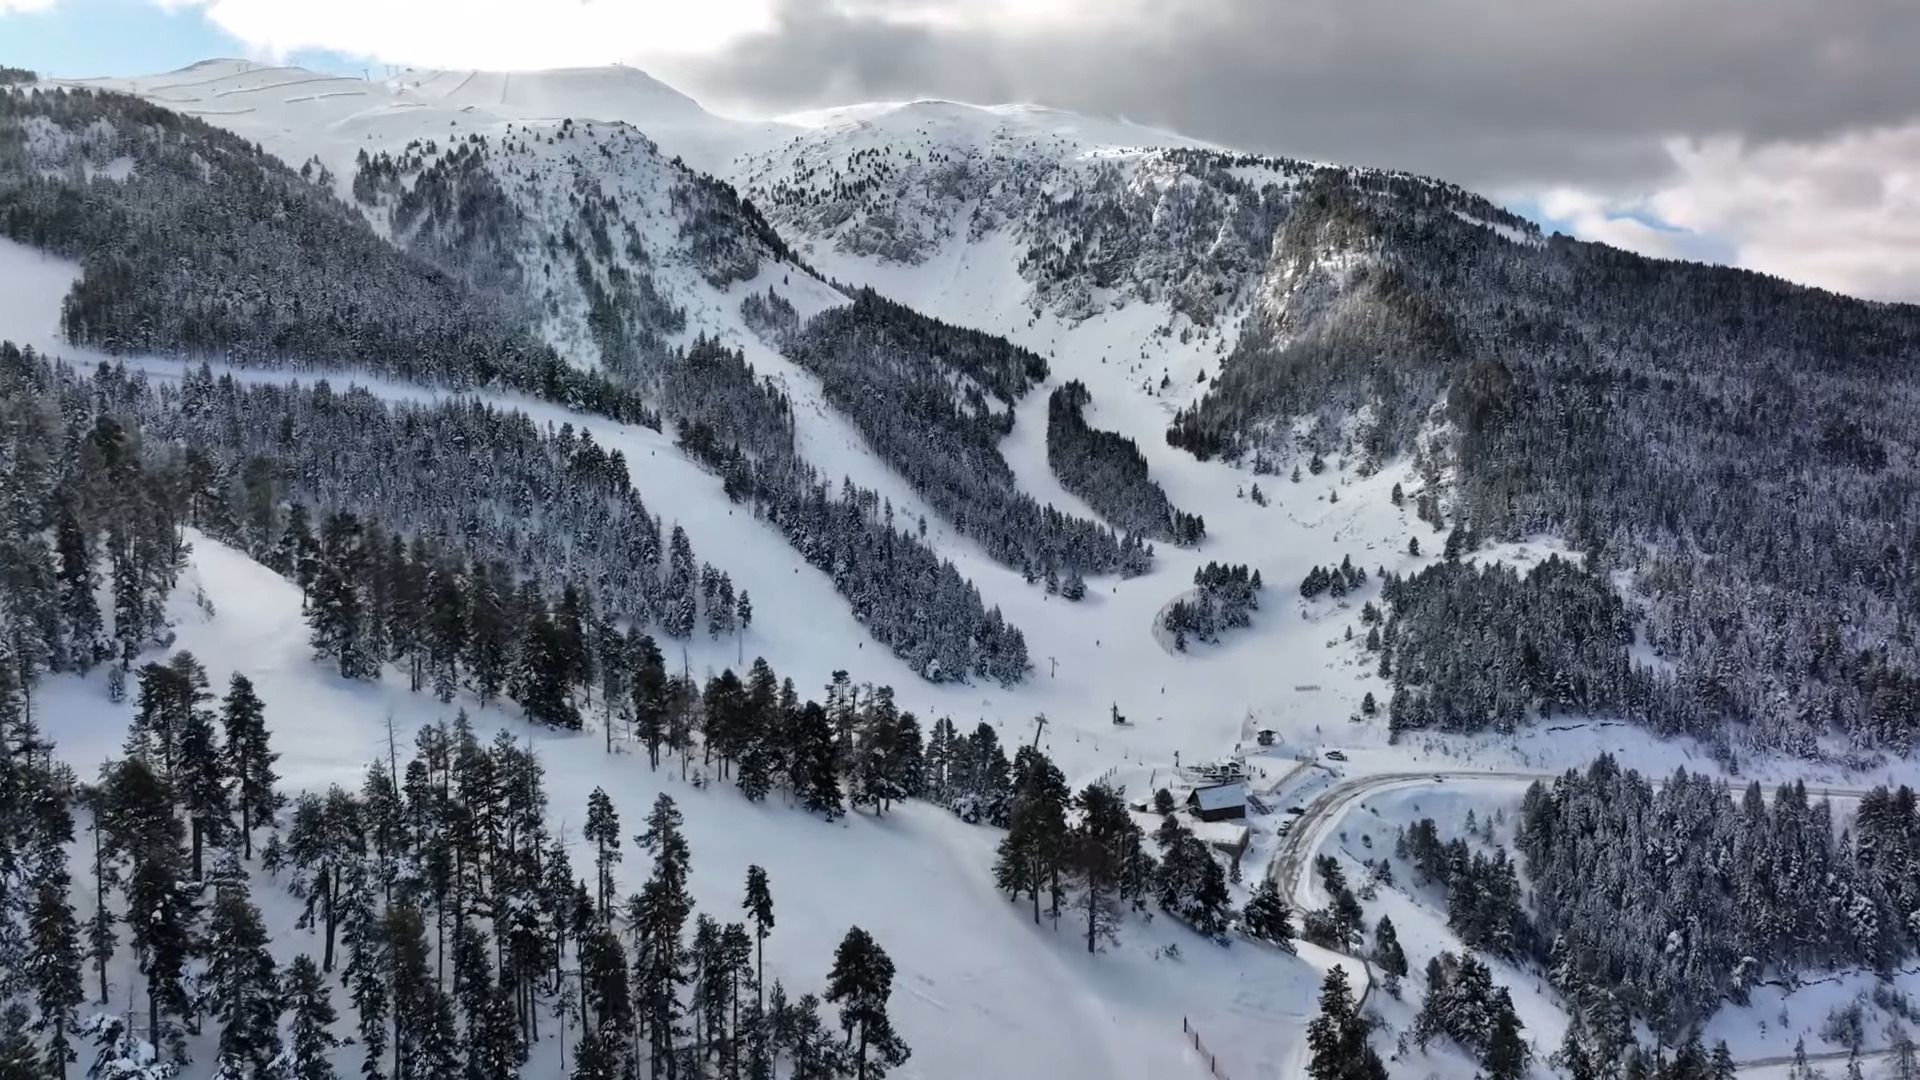 Vista aerea de las pistas de esquí de Masella